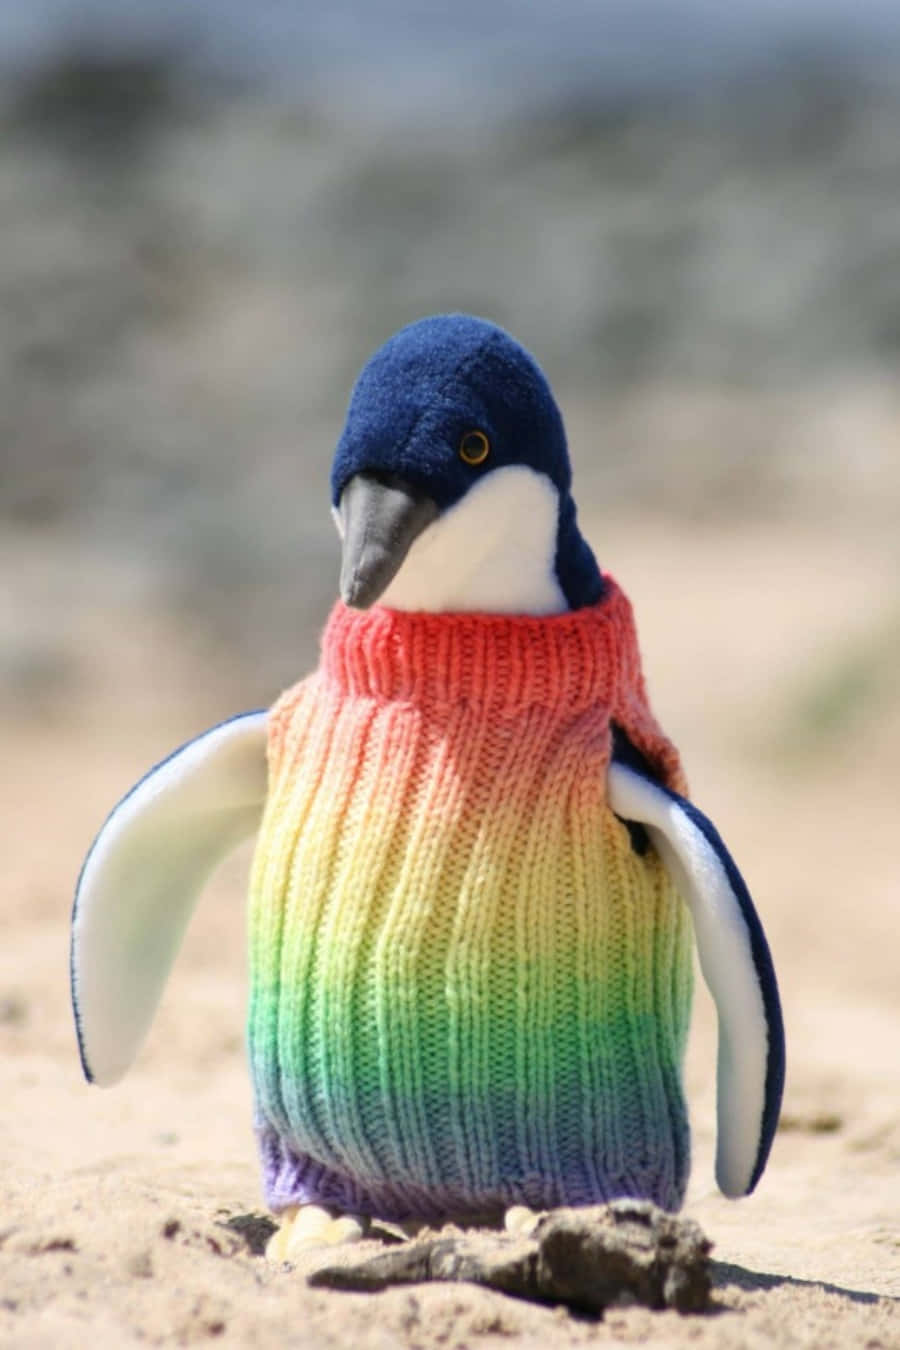 Immaginedel Pinguino Carino Che Indossa Una Maglia Arcobaleno.